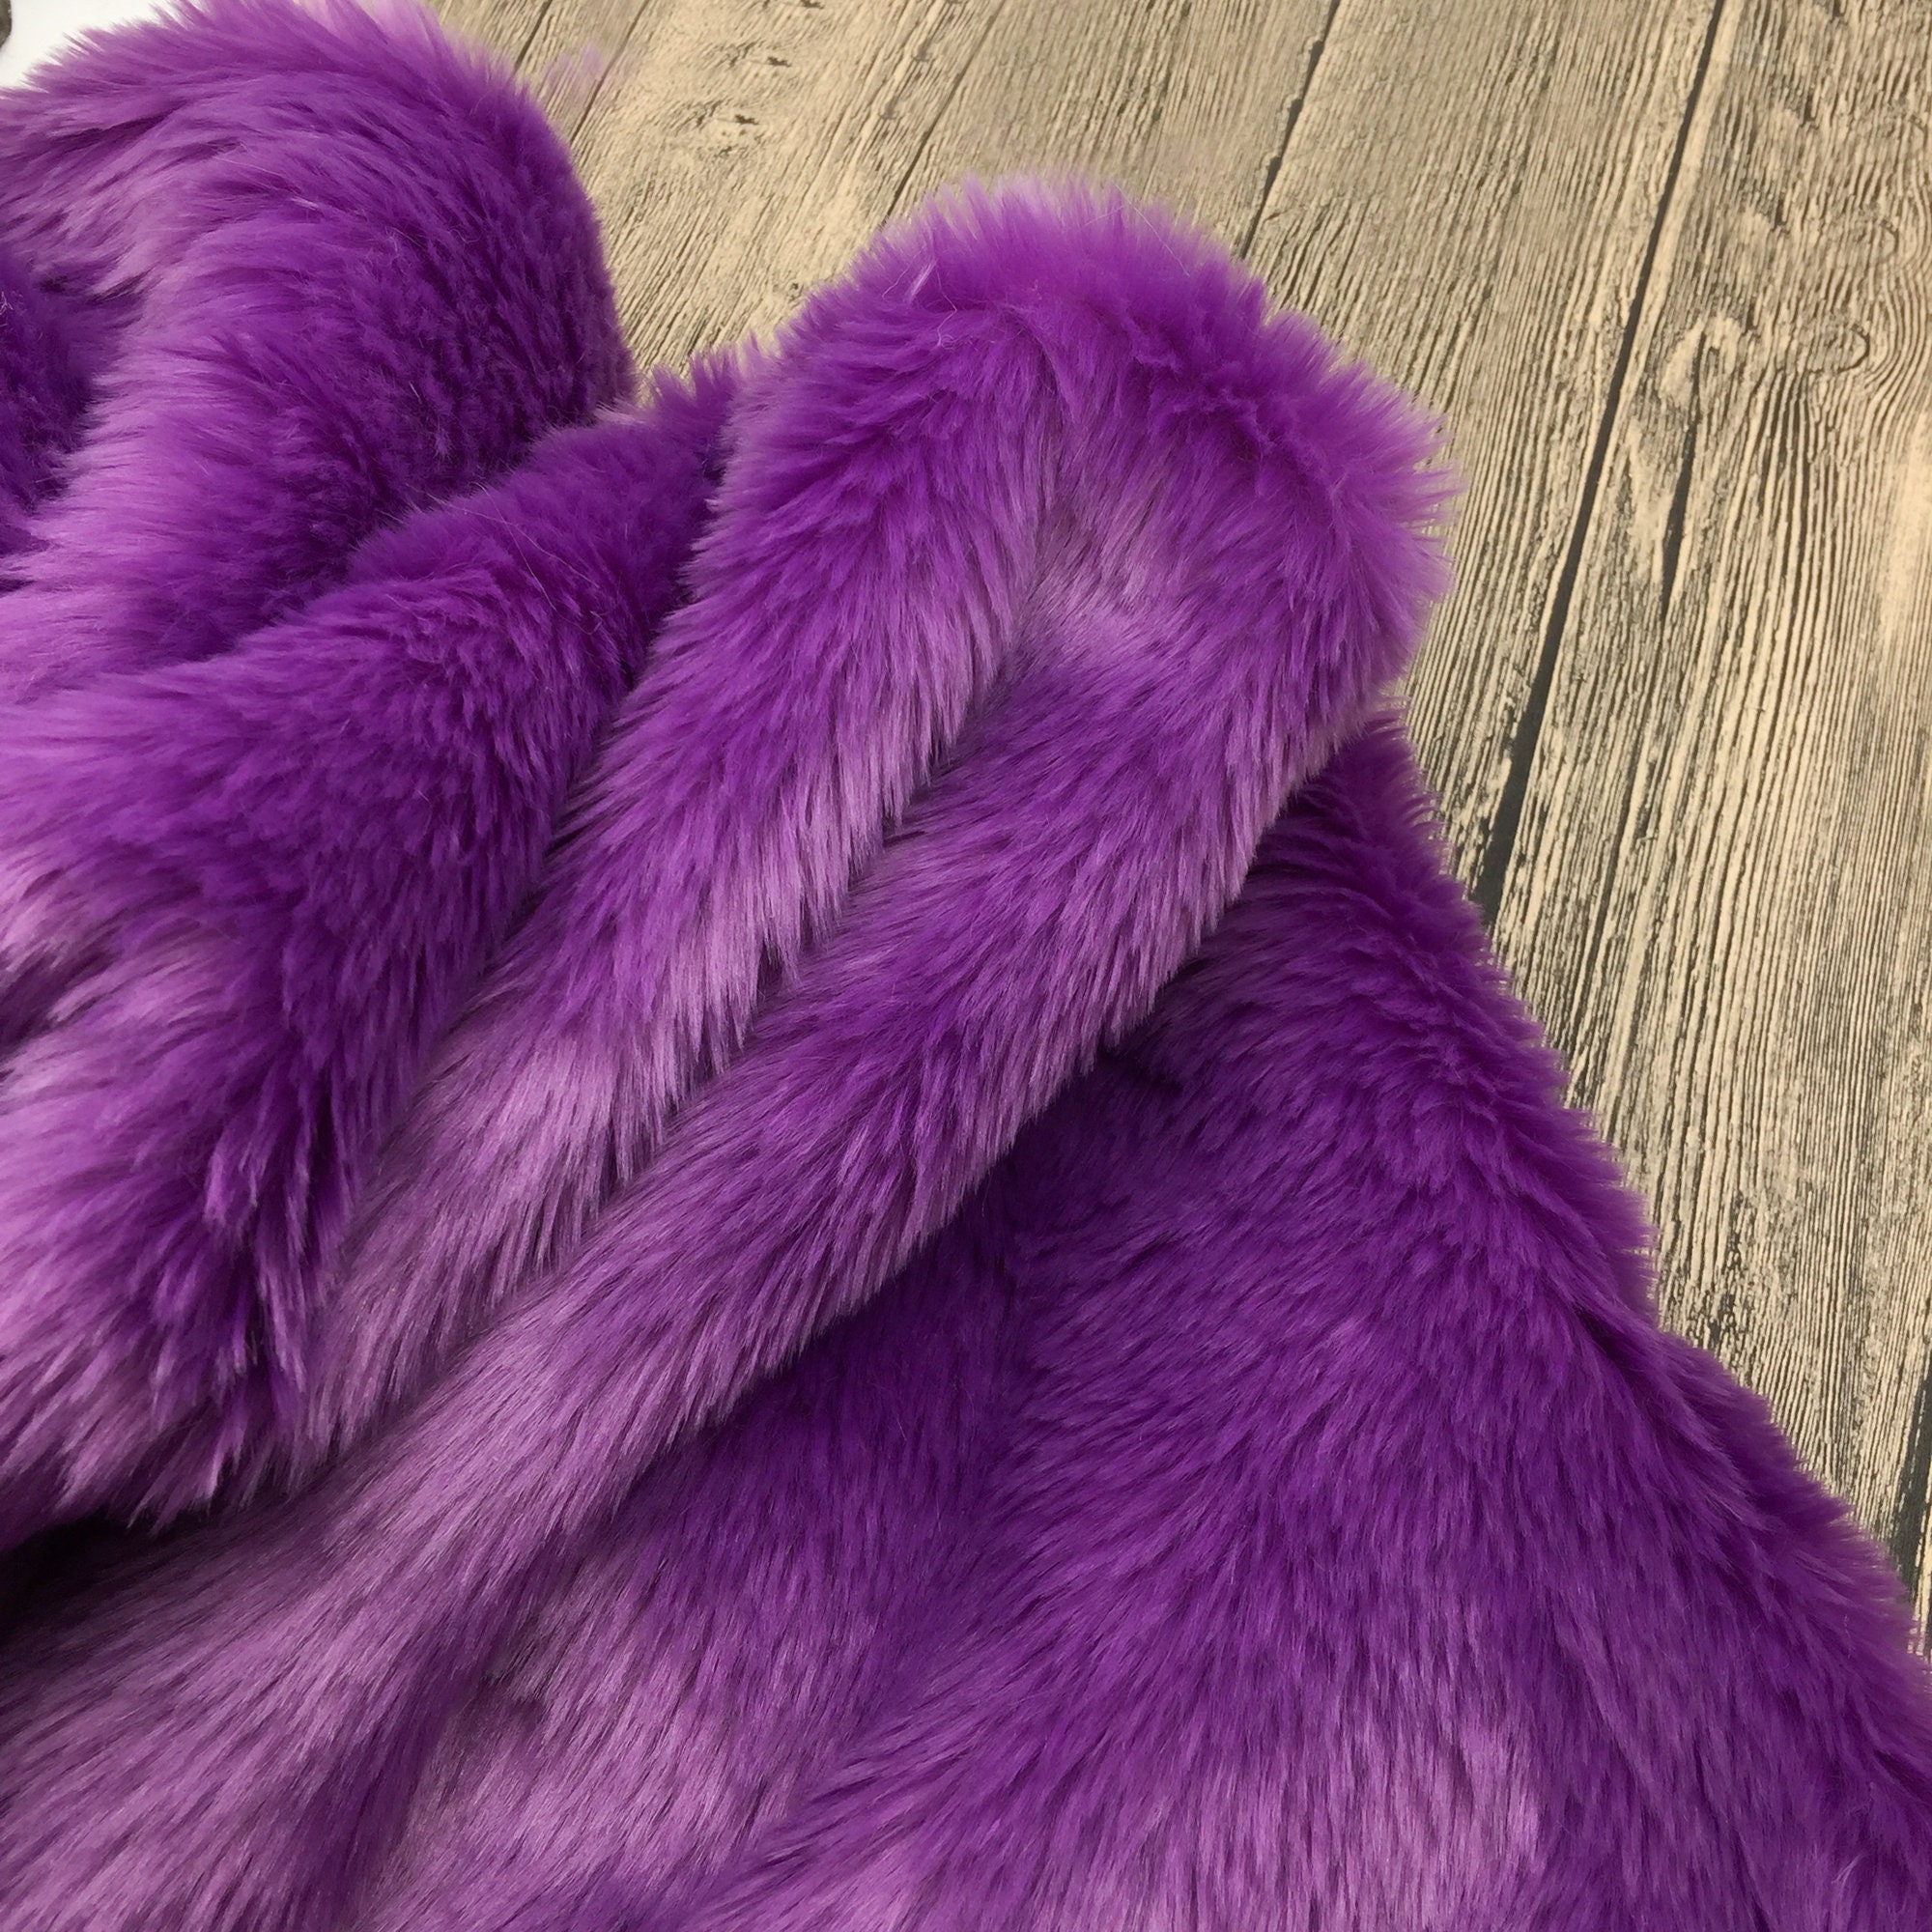 Violet Purple Premium Soft Bunny Fur Short Pile Faux Rabbit | Etsy